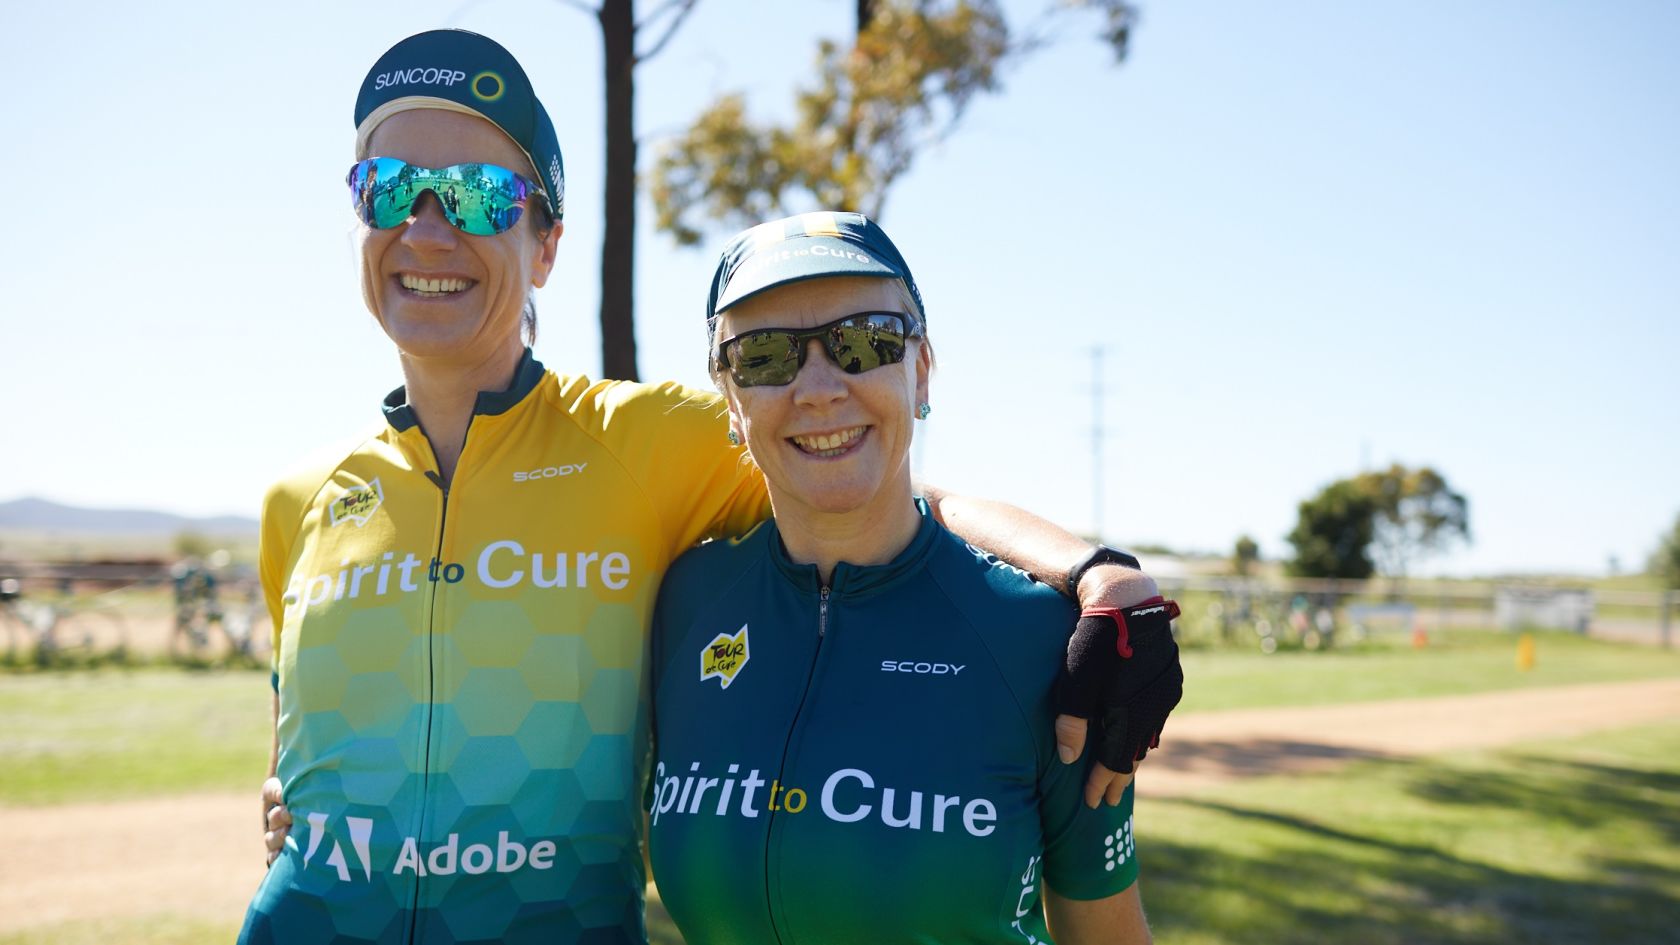 Suncorp team spirit raises $1 million for cancer research with Tour de Cure 